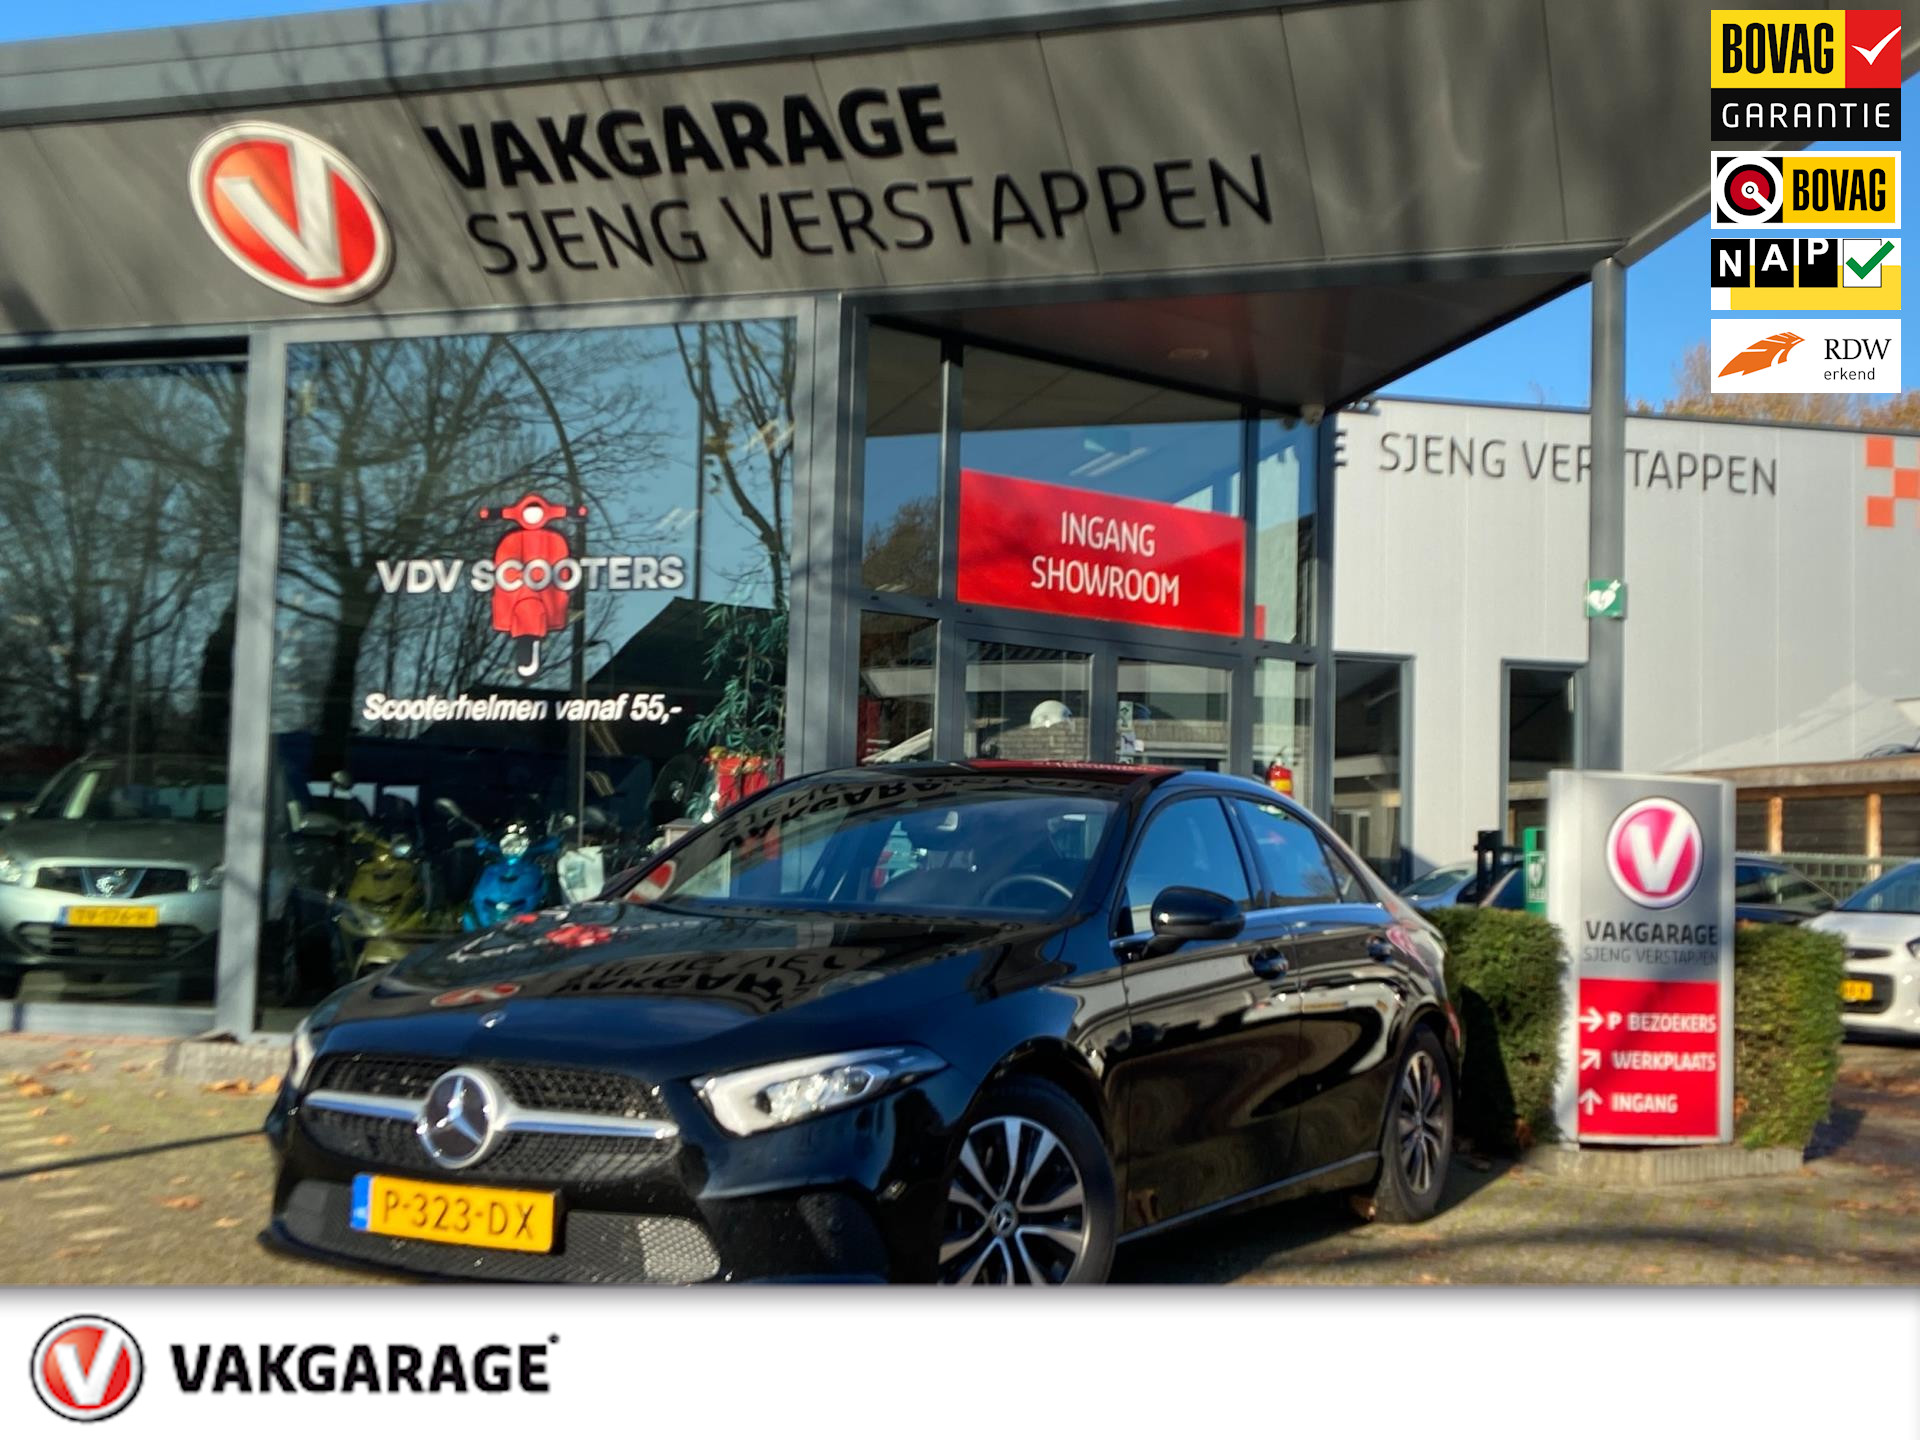 Mercedes-Benz A-klasse 200 Business Solution 12 maanden Bovag rijklaarprijs !! bij viaBOVAG.nl